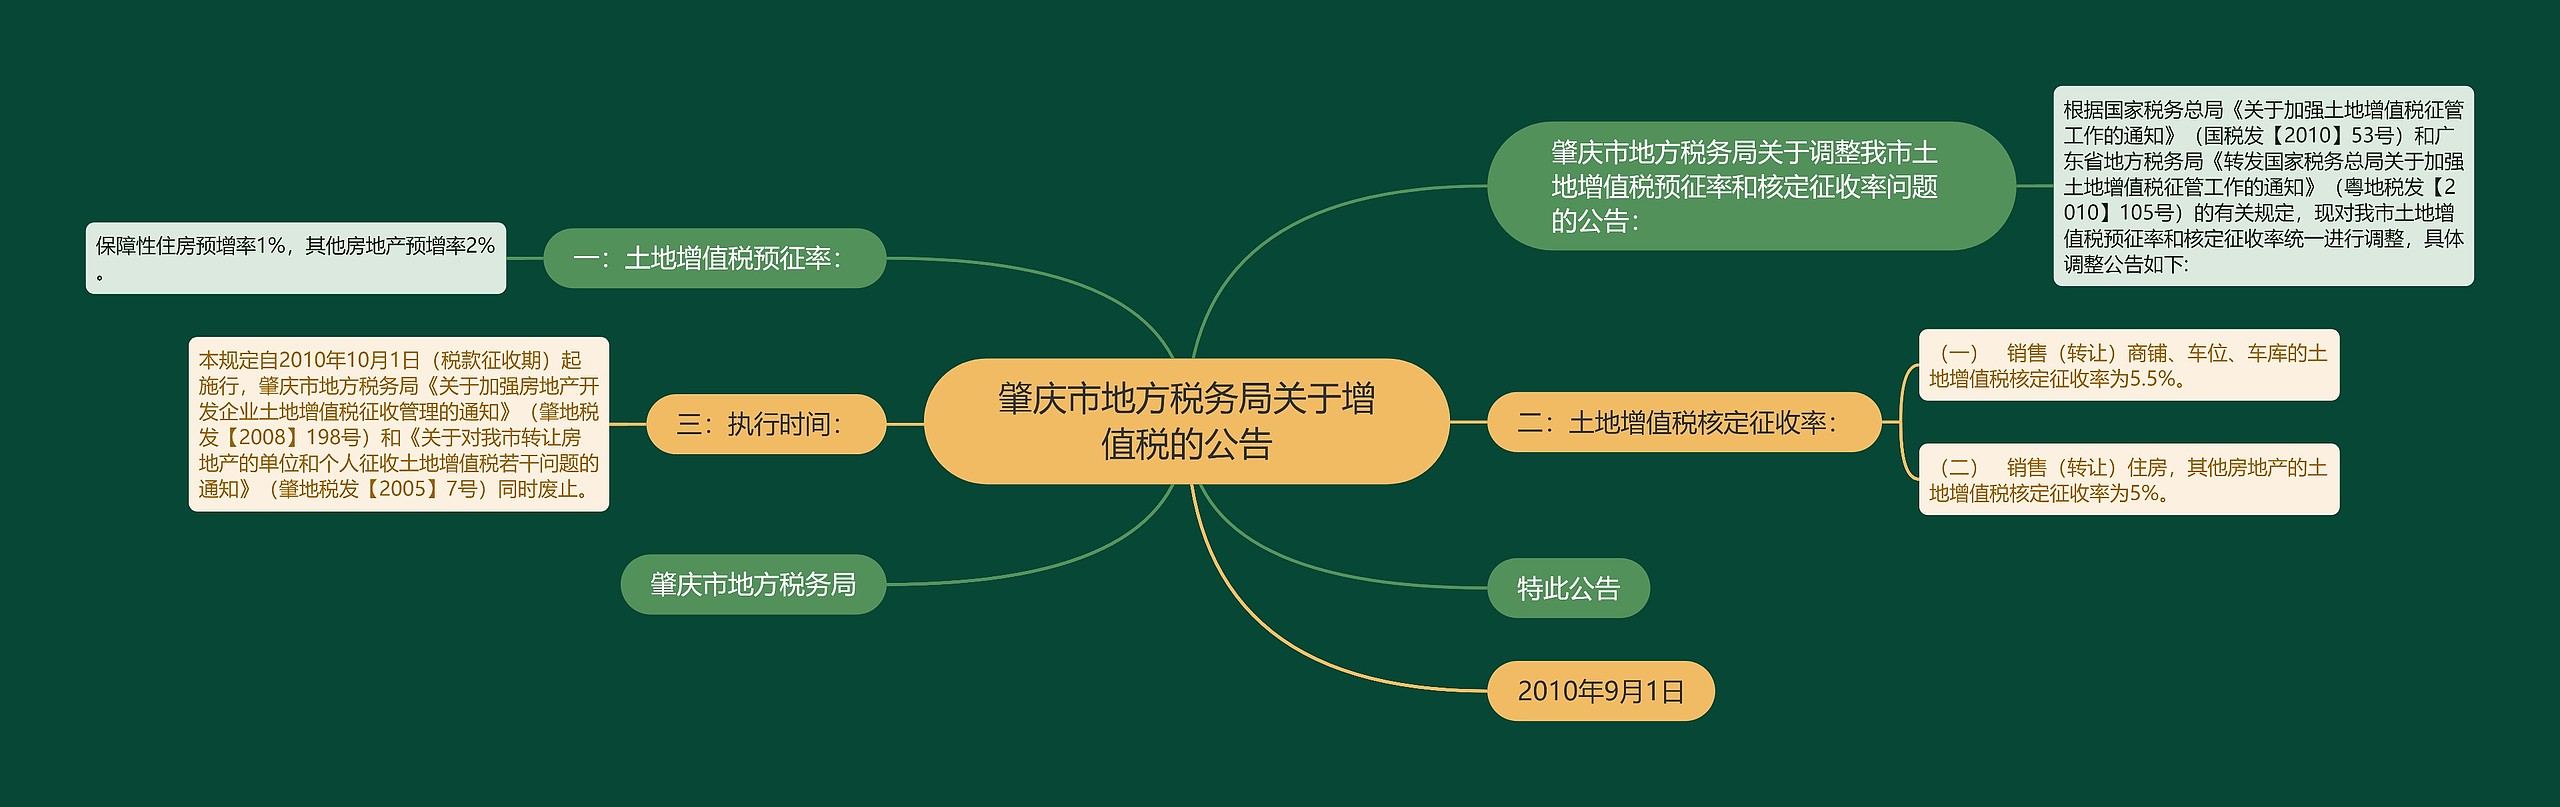 肇庆市地方税务局关于增值税的公告思维导图